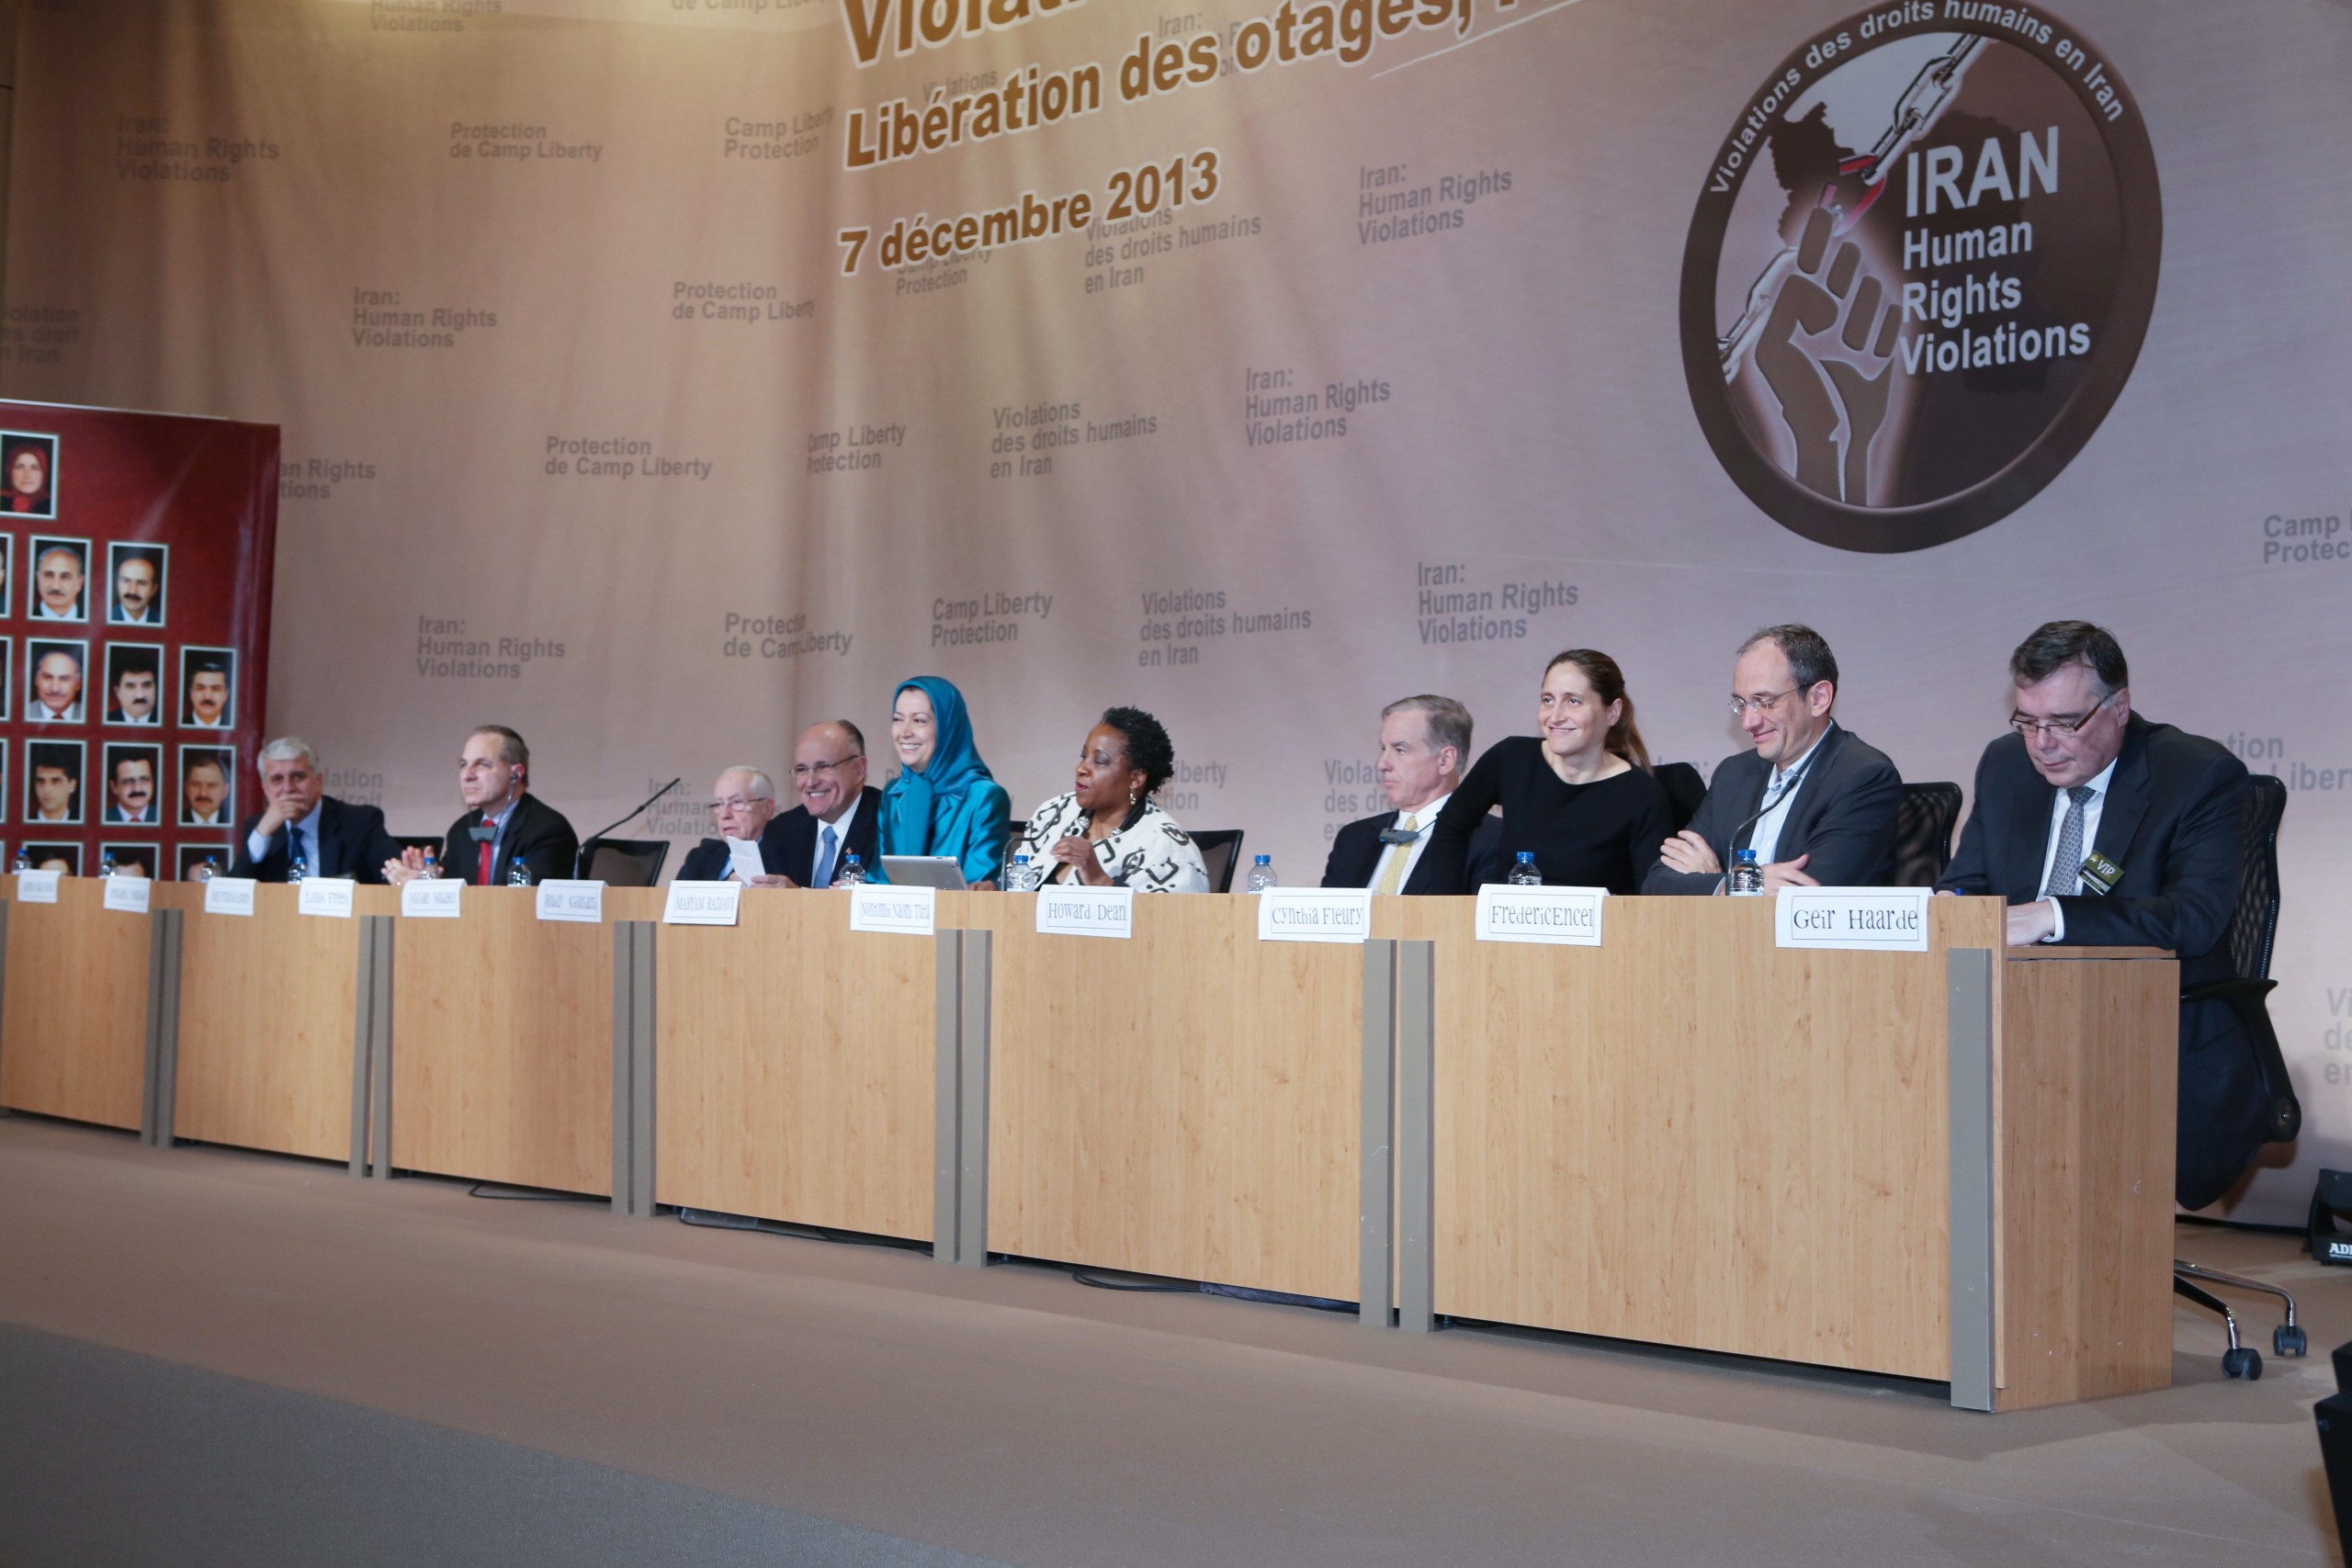 كلمة مريم رجوي في المؤتمر الدولي في باريس عشية اليوم العالمي لحقوق الانسان